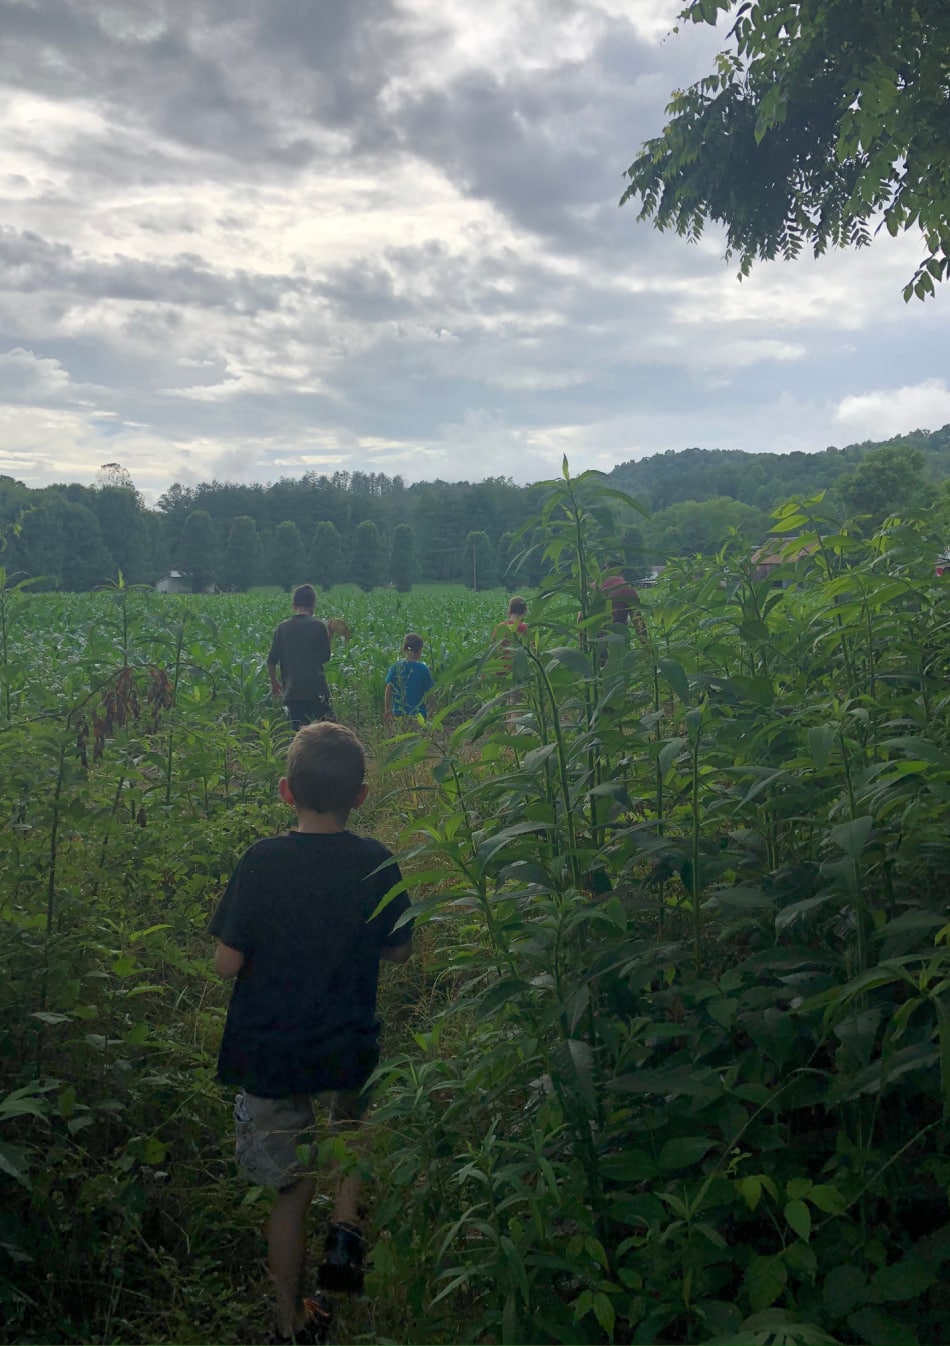 boys walking through a field